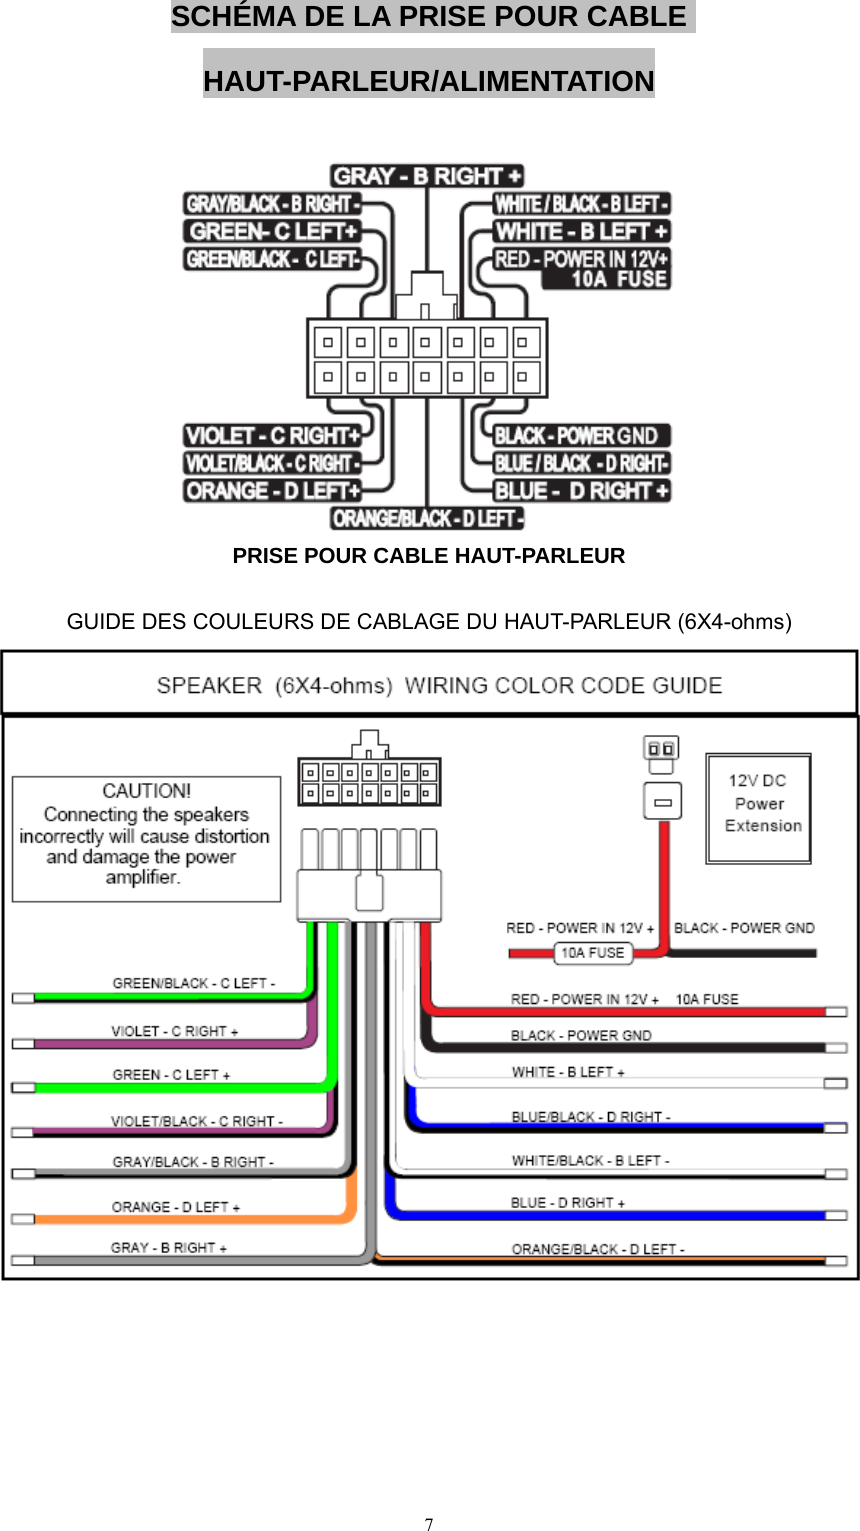  7 SCHÉMA DE LA PRISE POUR CABLE HAUT-PARLEUR/ALIMENTATION   PRISE POUR CABLE HAUT-PARLEUR  GUIDE DES COULEURS DE CABLAGE DU HAUT-PARLEUR (6X4-ohms)        